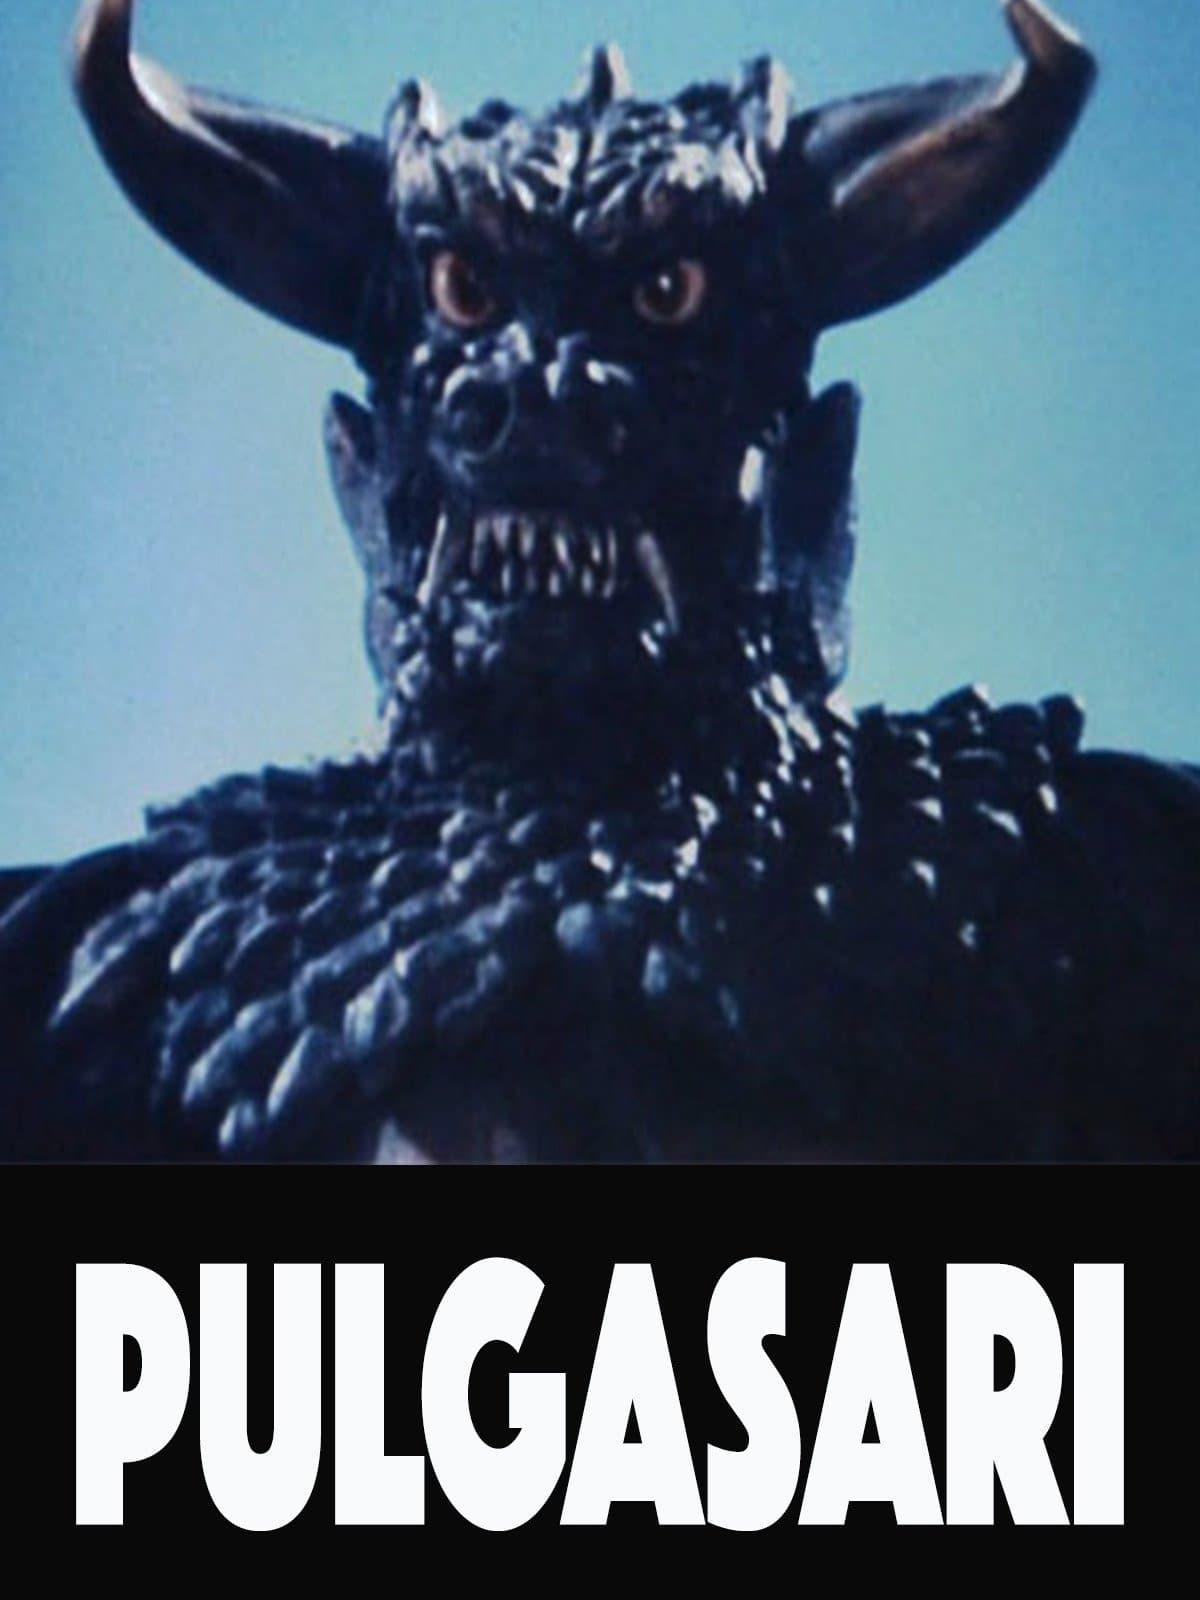 Pulgasari poster